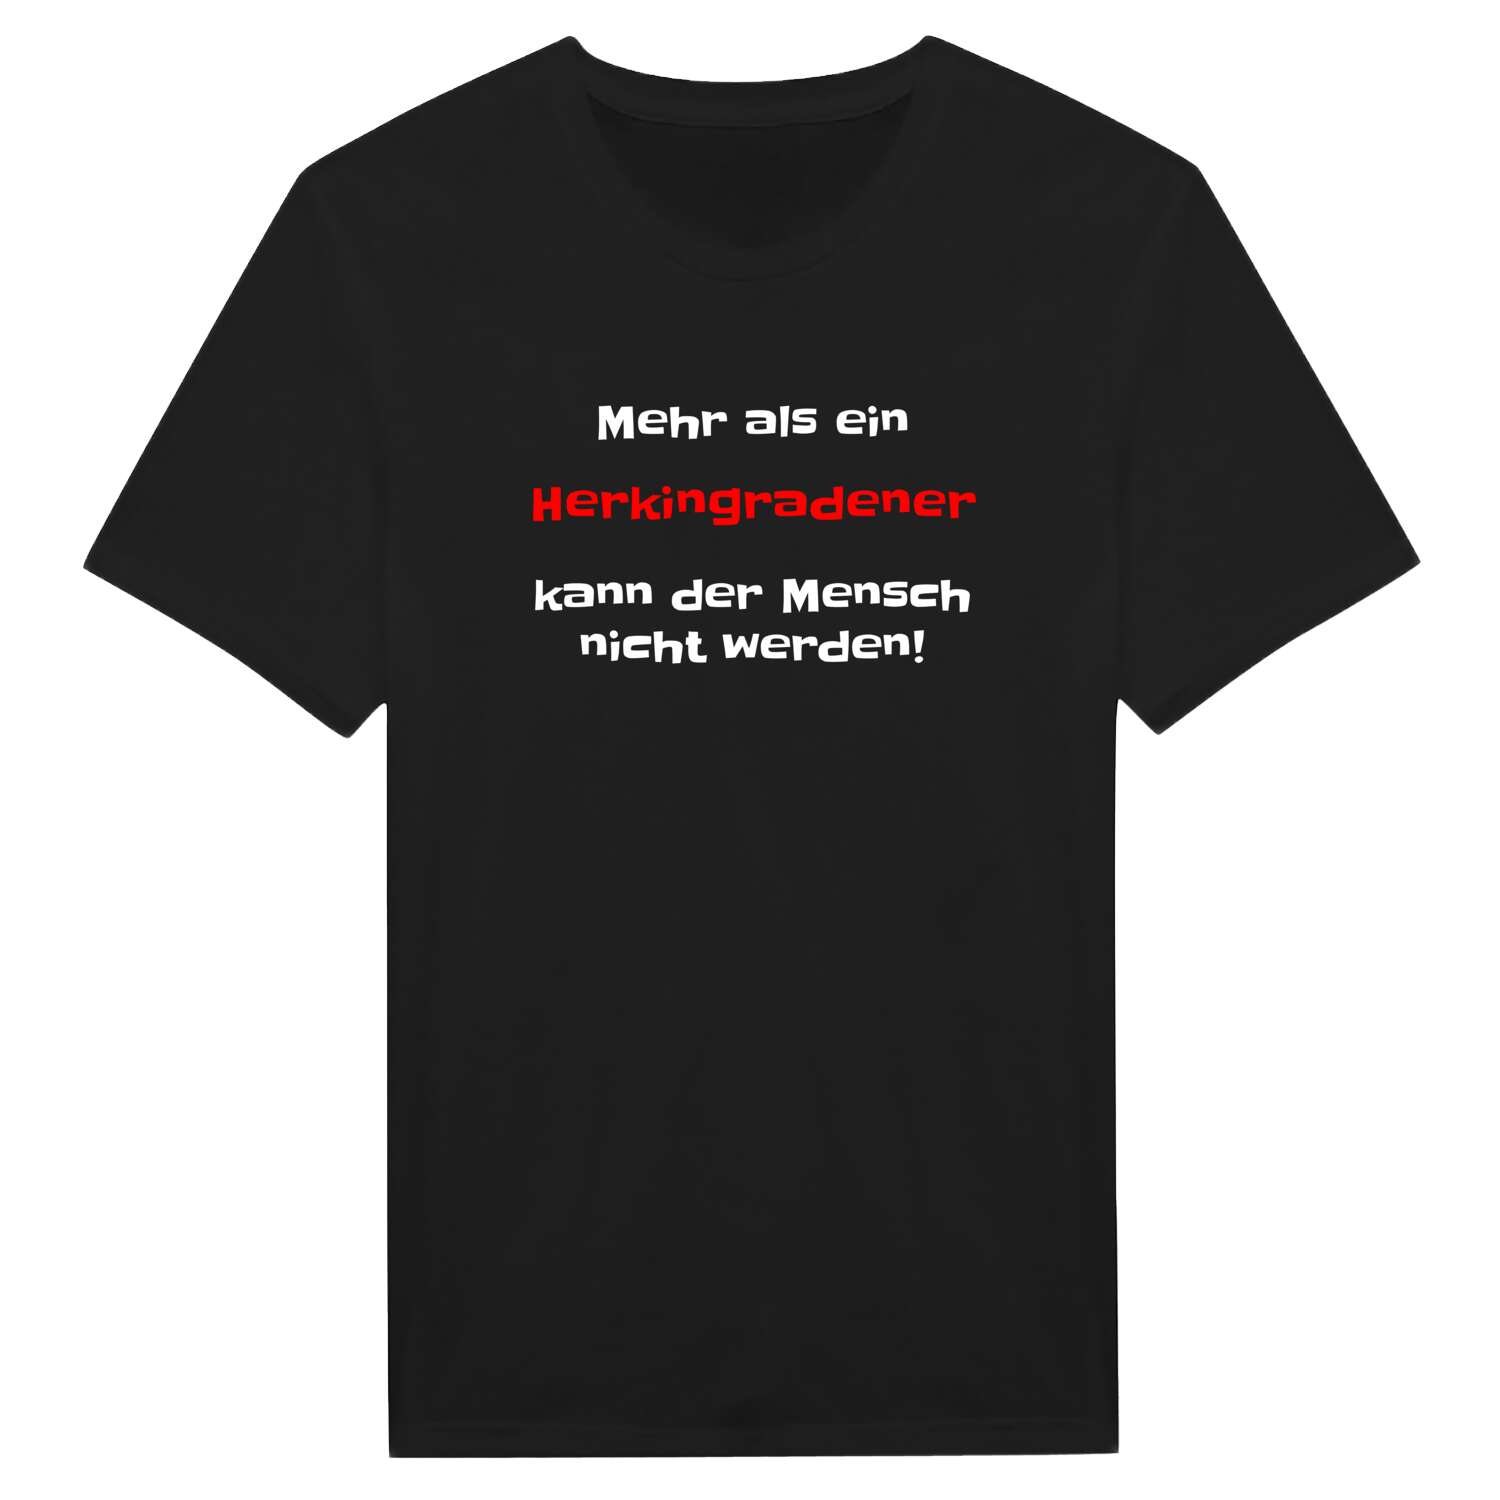 Herkingrade T-Shirt »Mehr als ein«